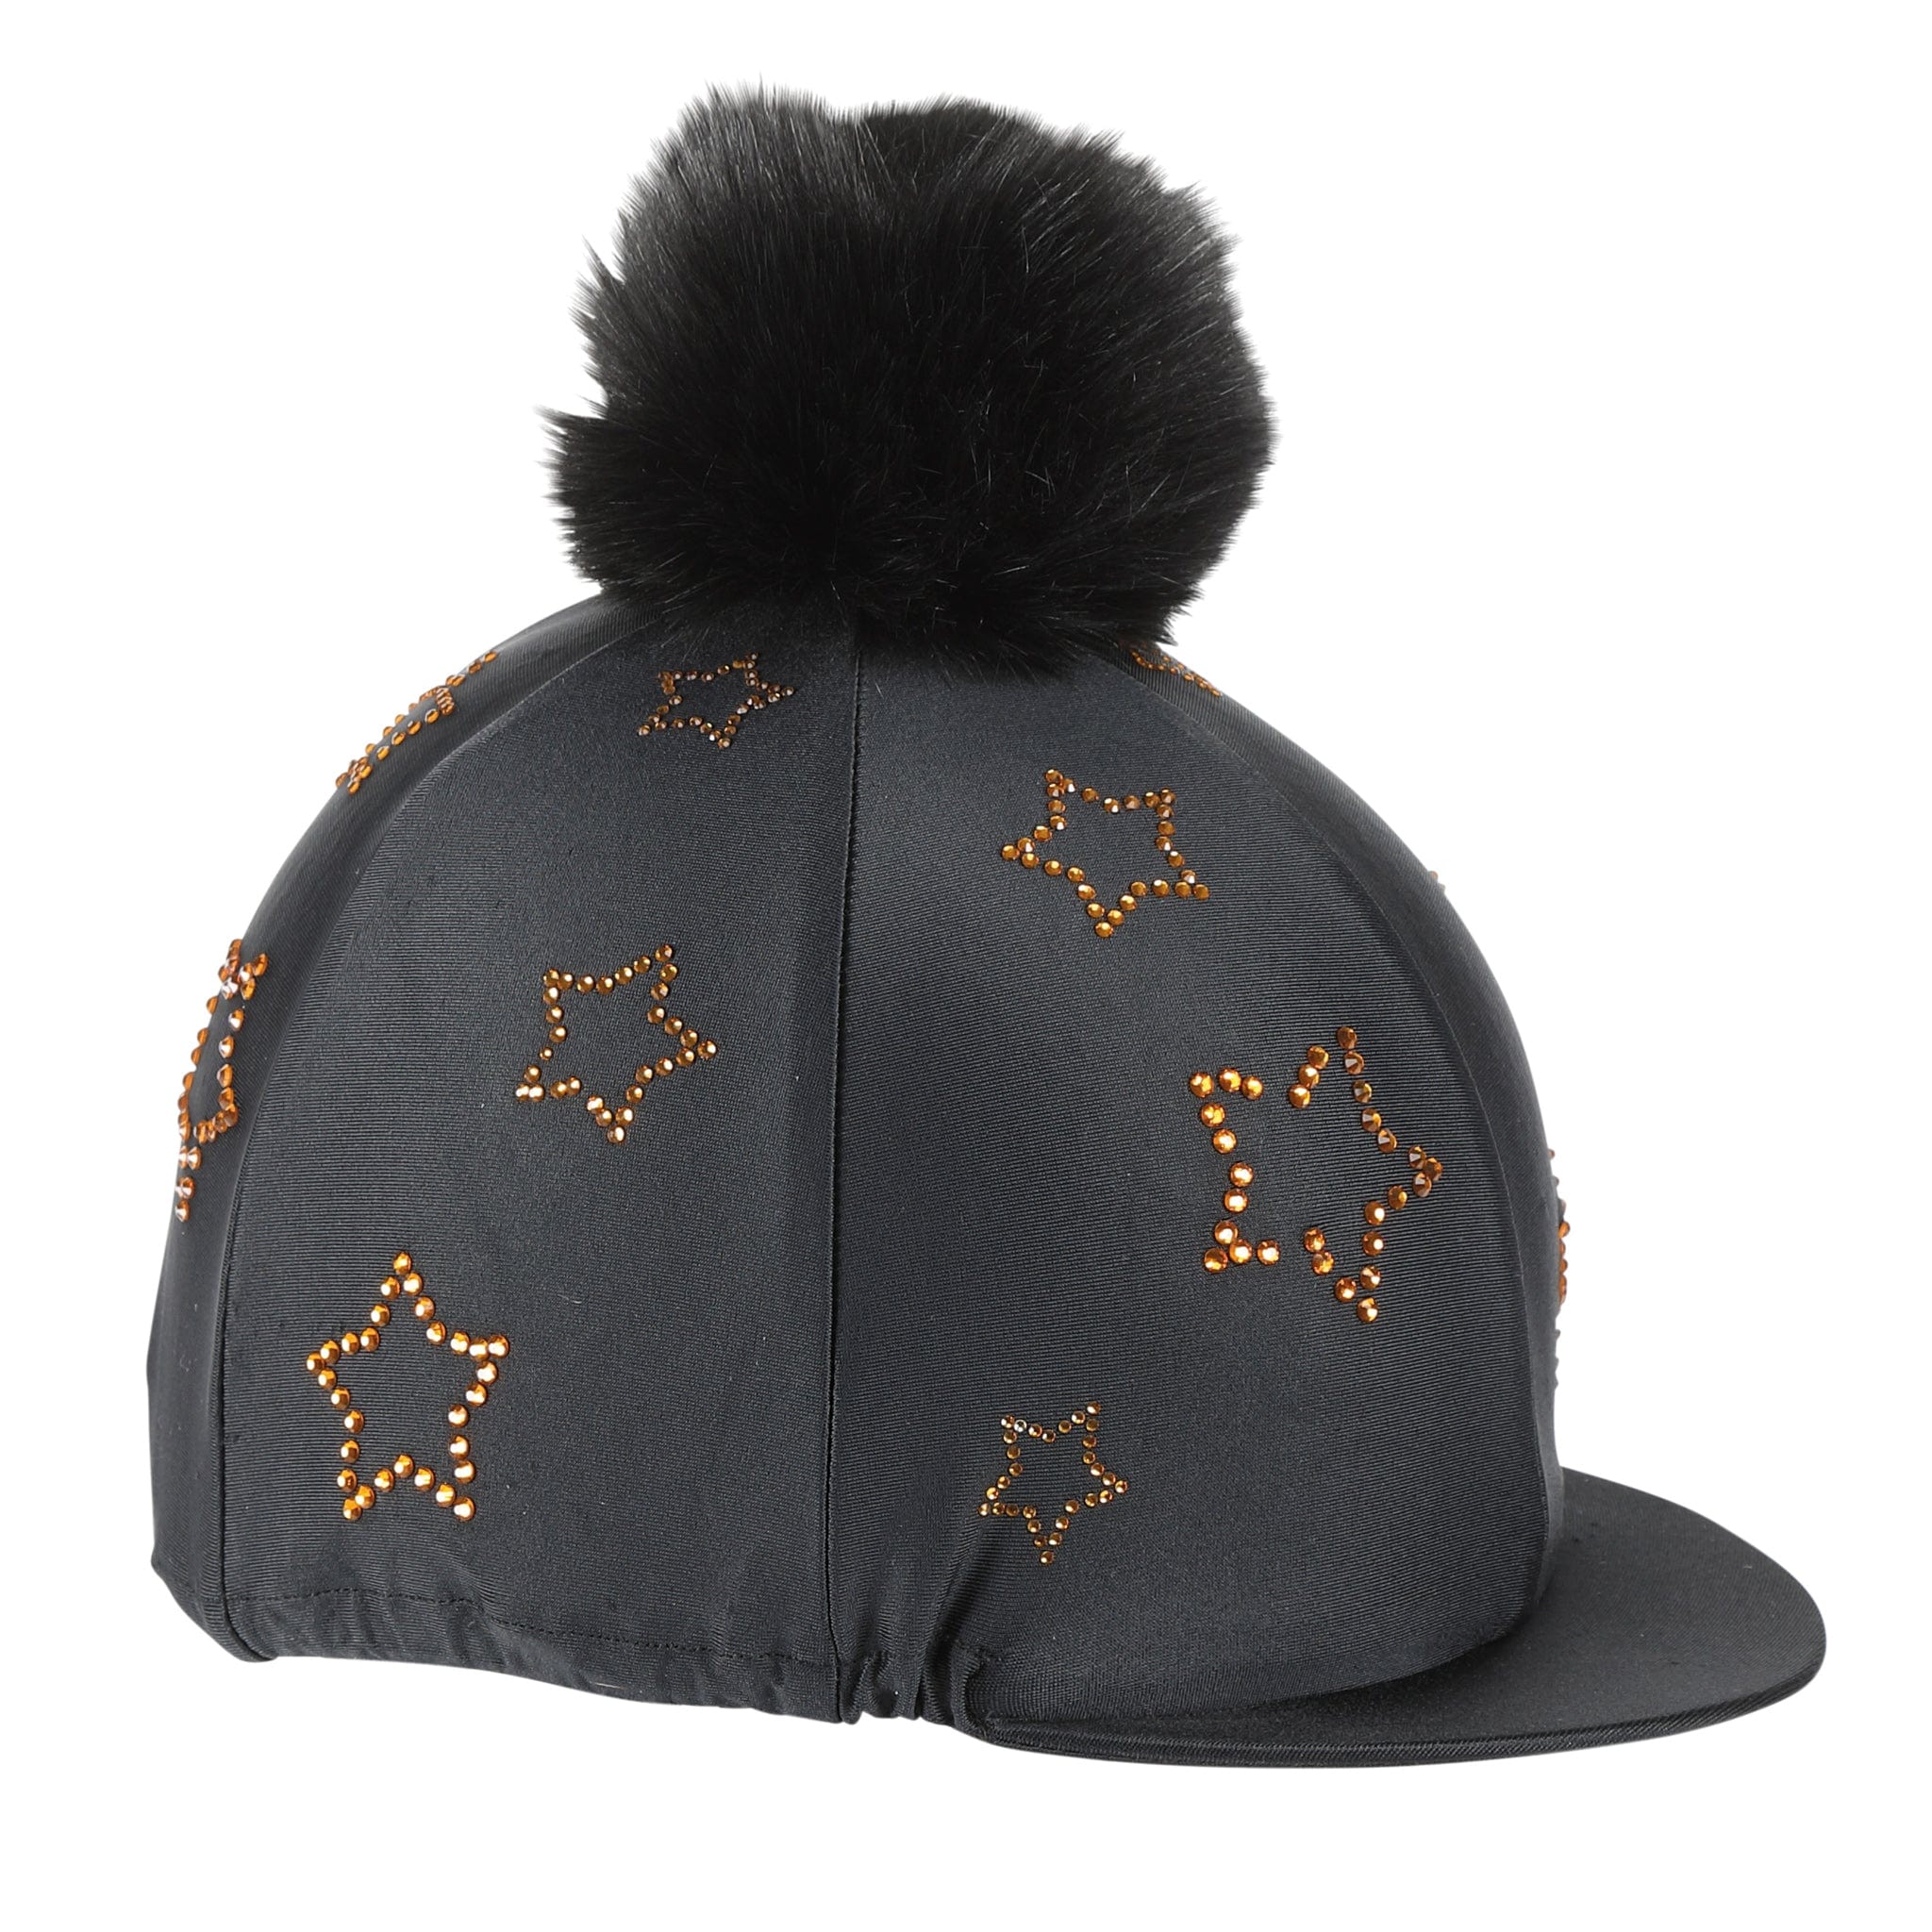 Shires Diamante Hat Cover 806 Black and Orange